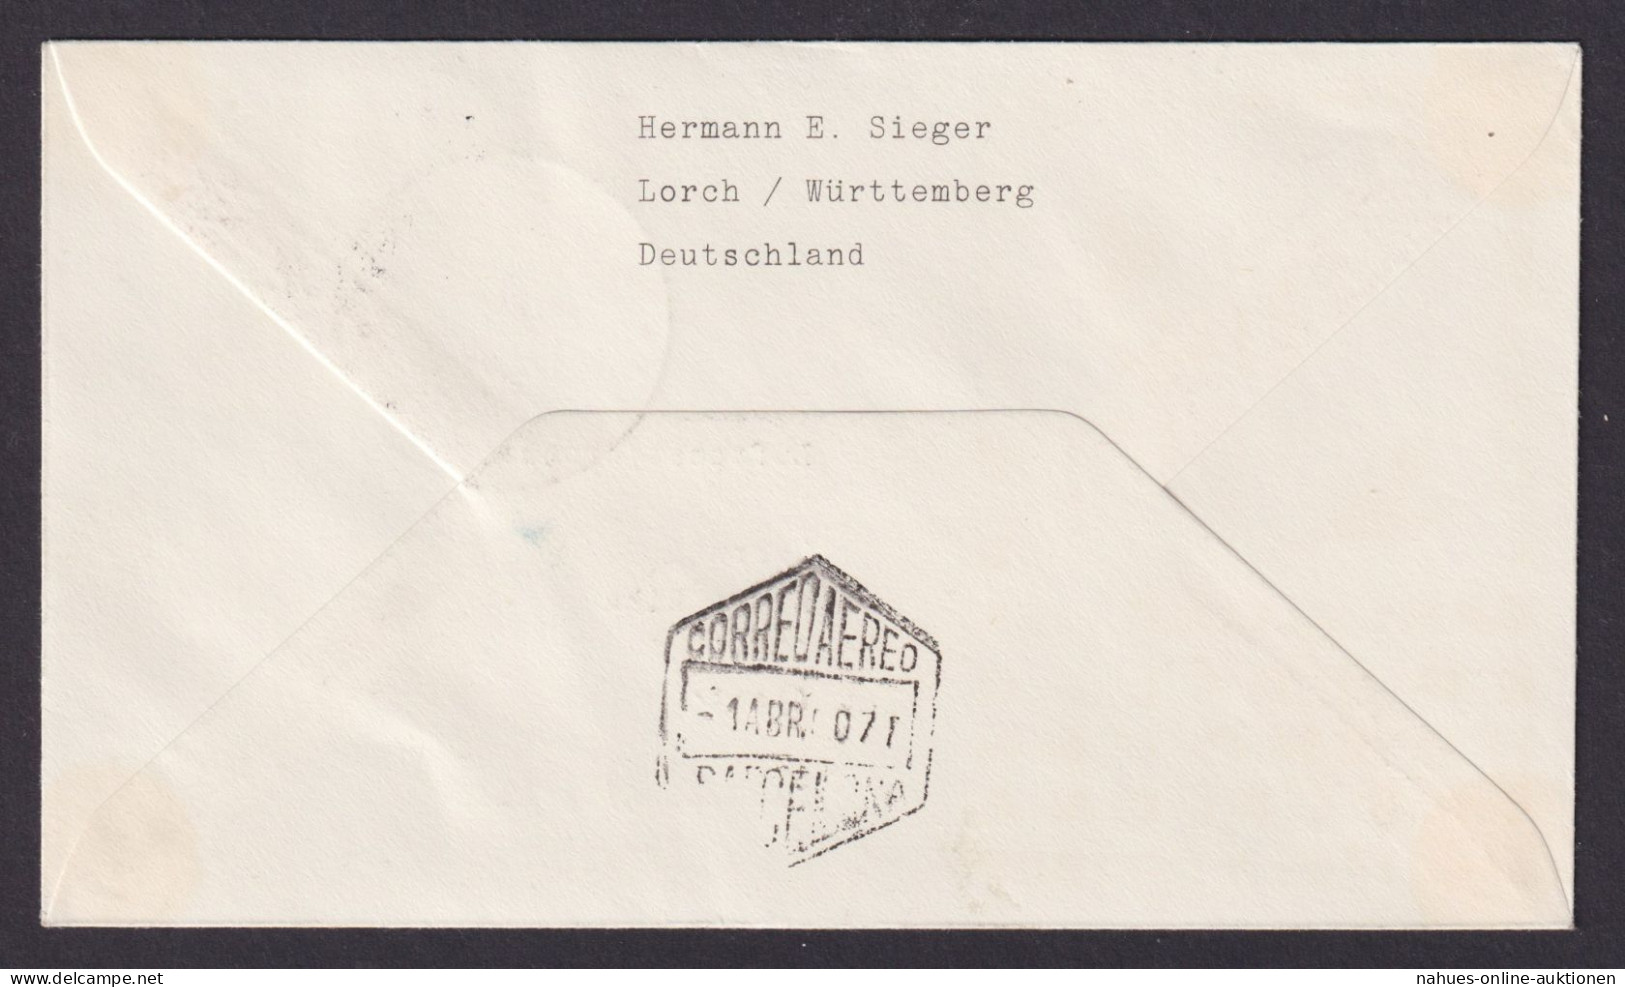 Flugpost Brief Air Mail Bund Erstflug Lufhansa LH176 I-IV Hannover Barcelona - Brieven En Documenten